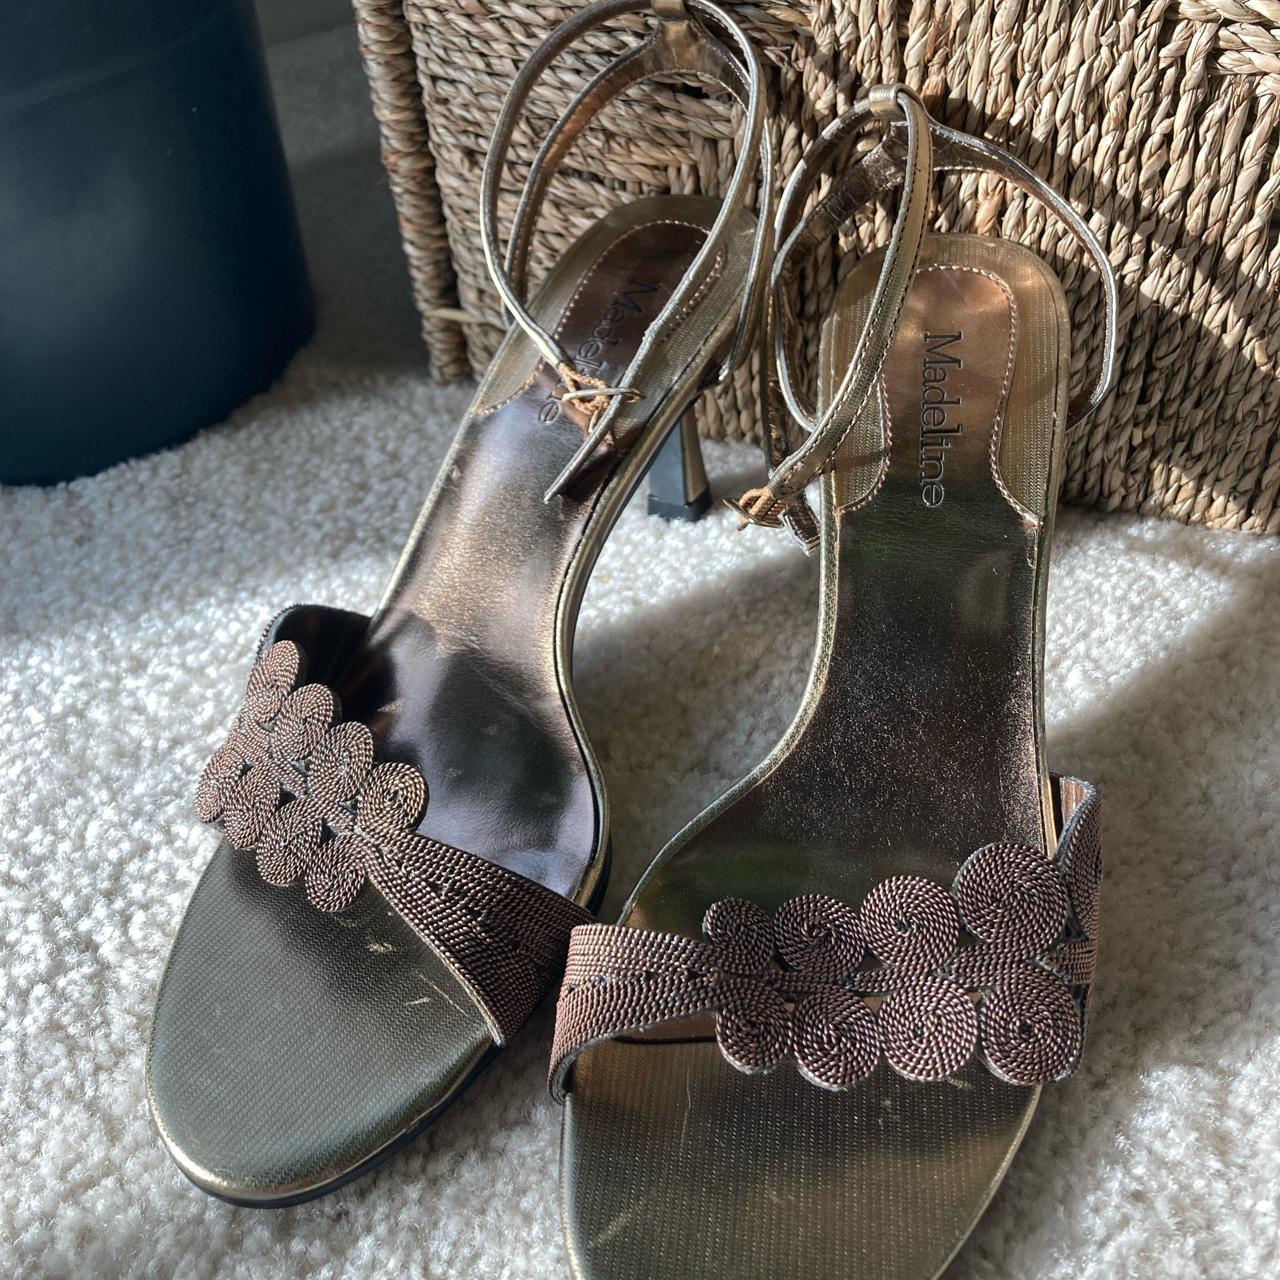 Swirly bronze kitten heels. Ankle strap improves... - Depop